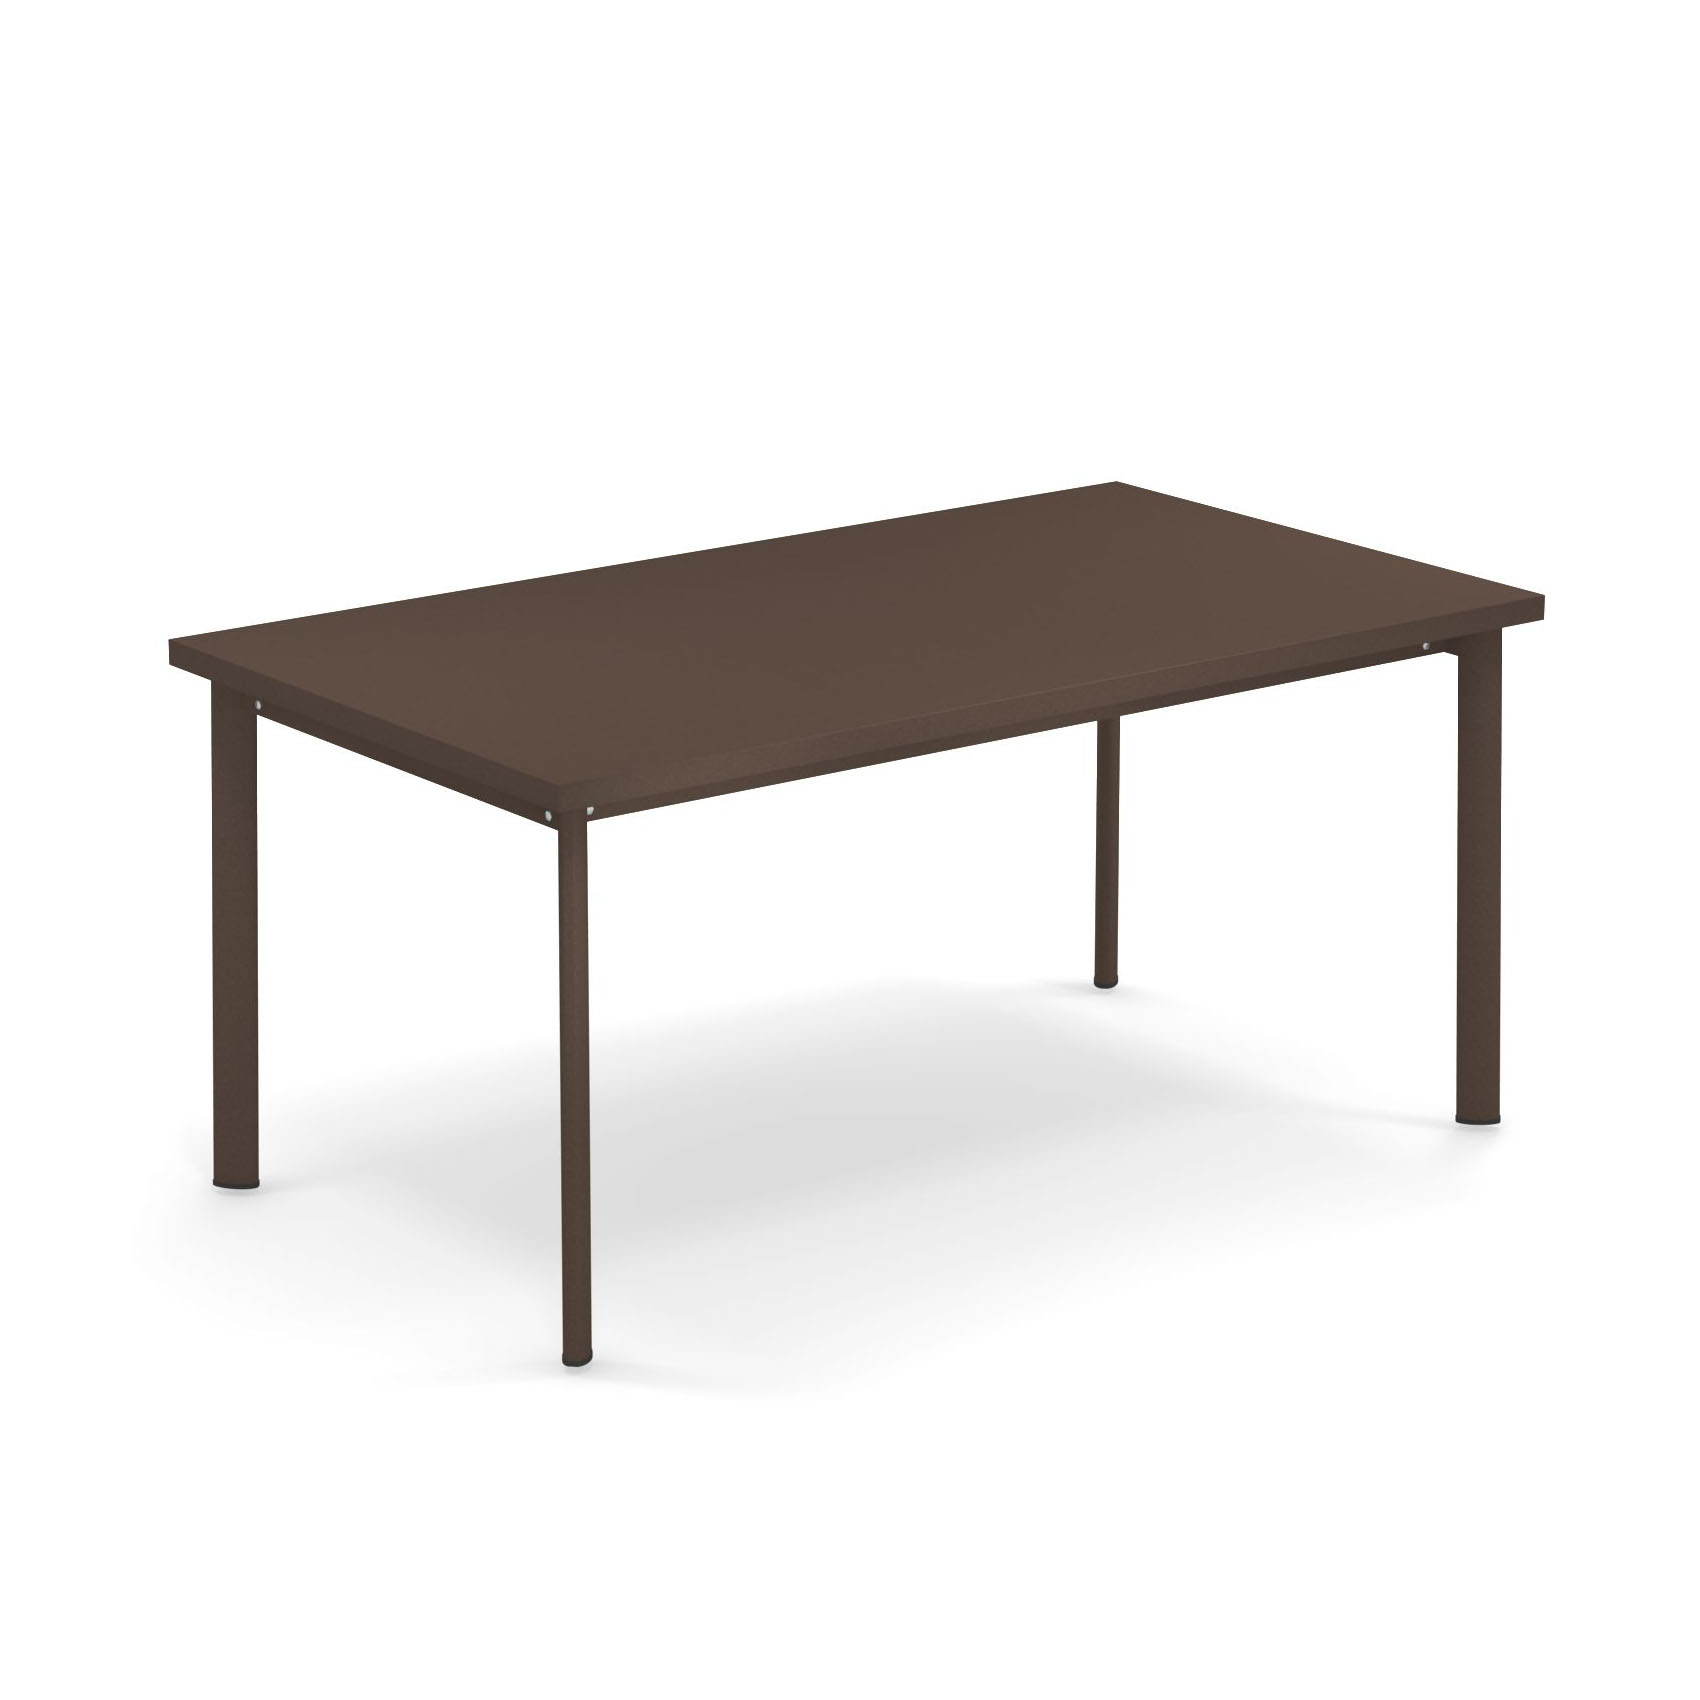 emu - Star Gartentisch rechteckig 160x90cm - indischbraun/pulverbeschichtet/LxBxH 160x90x75cm